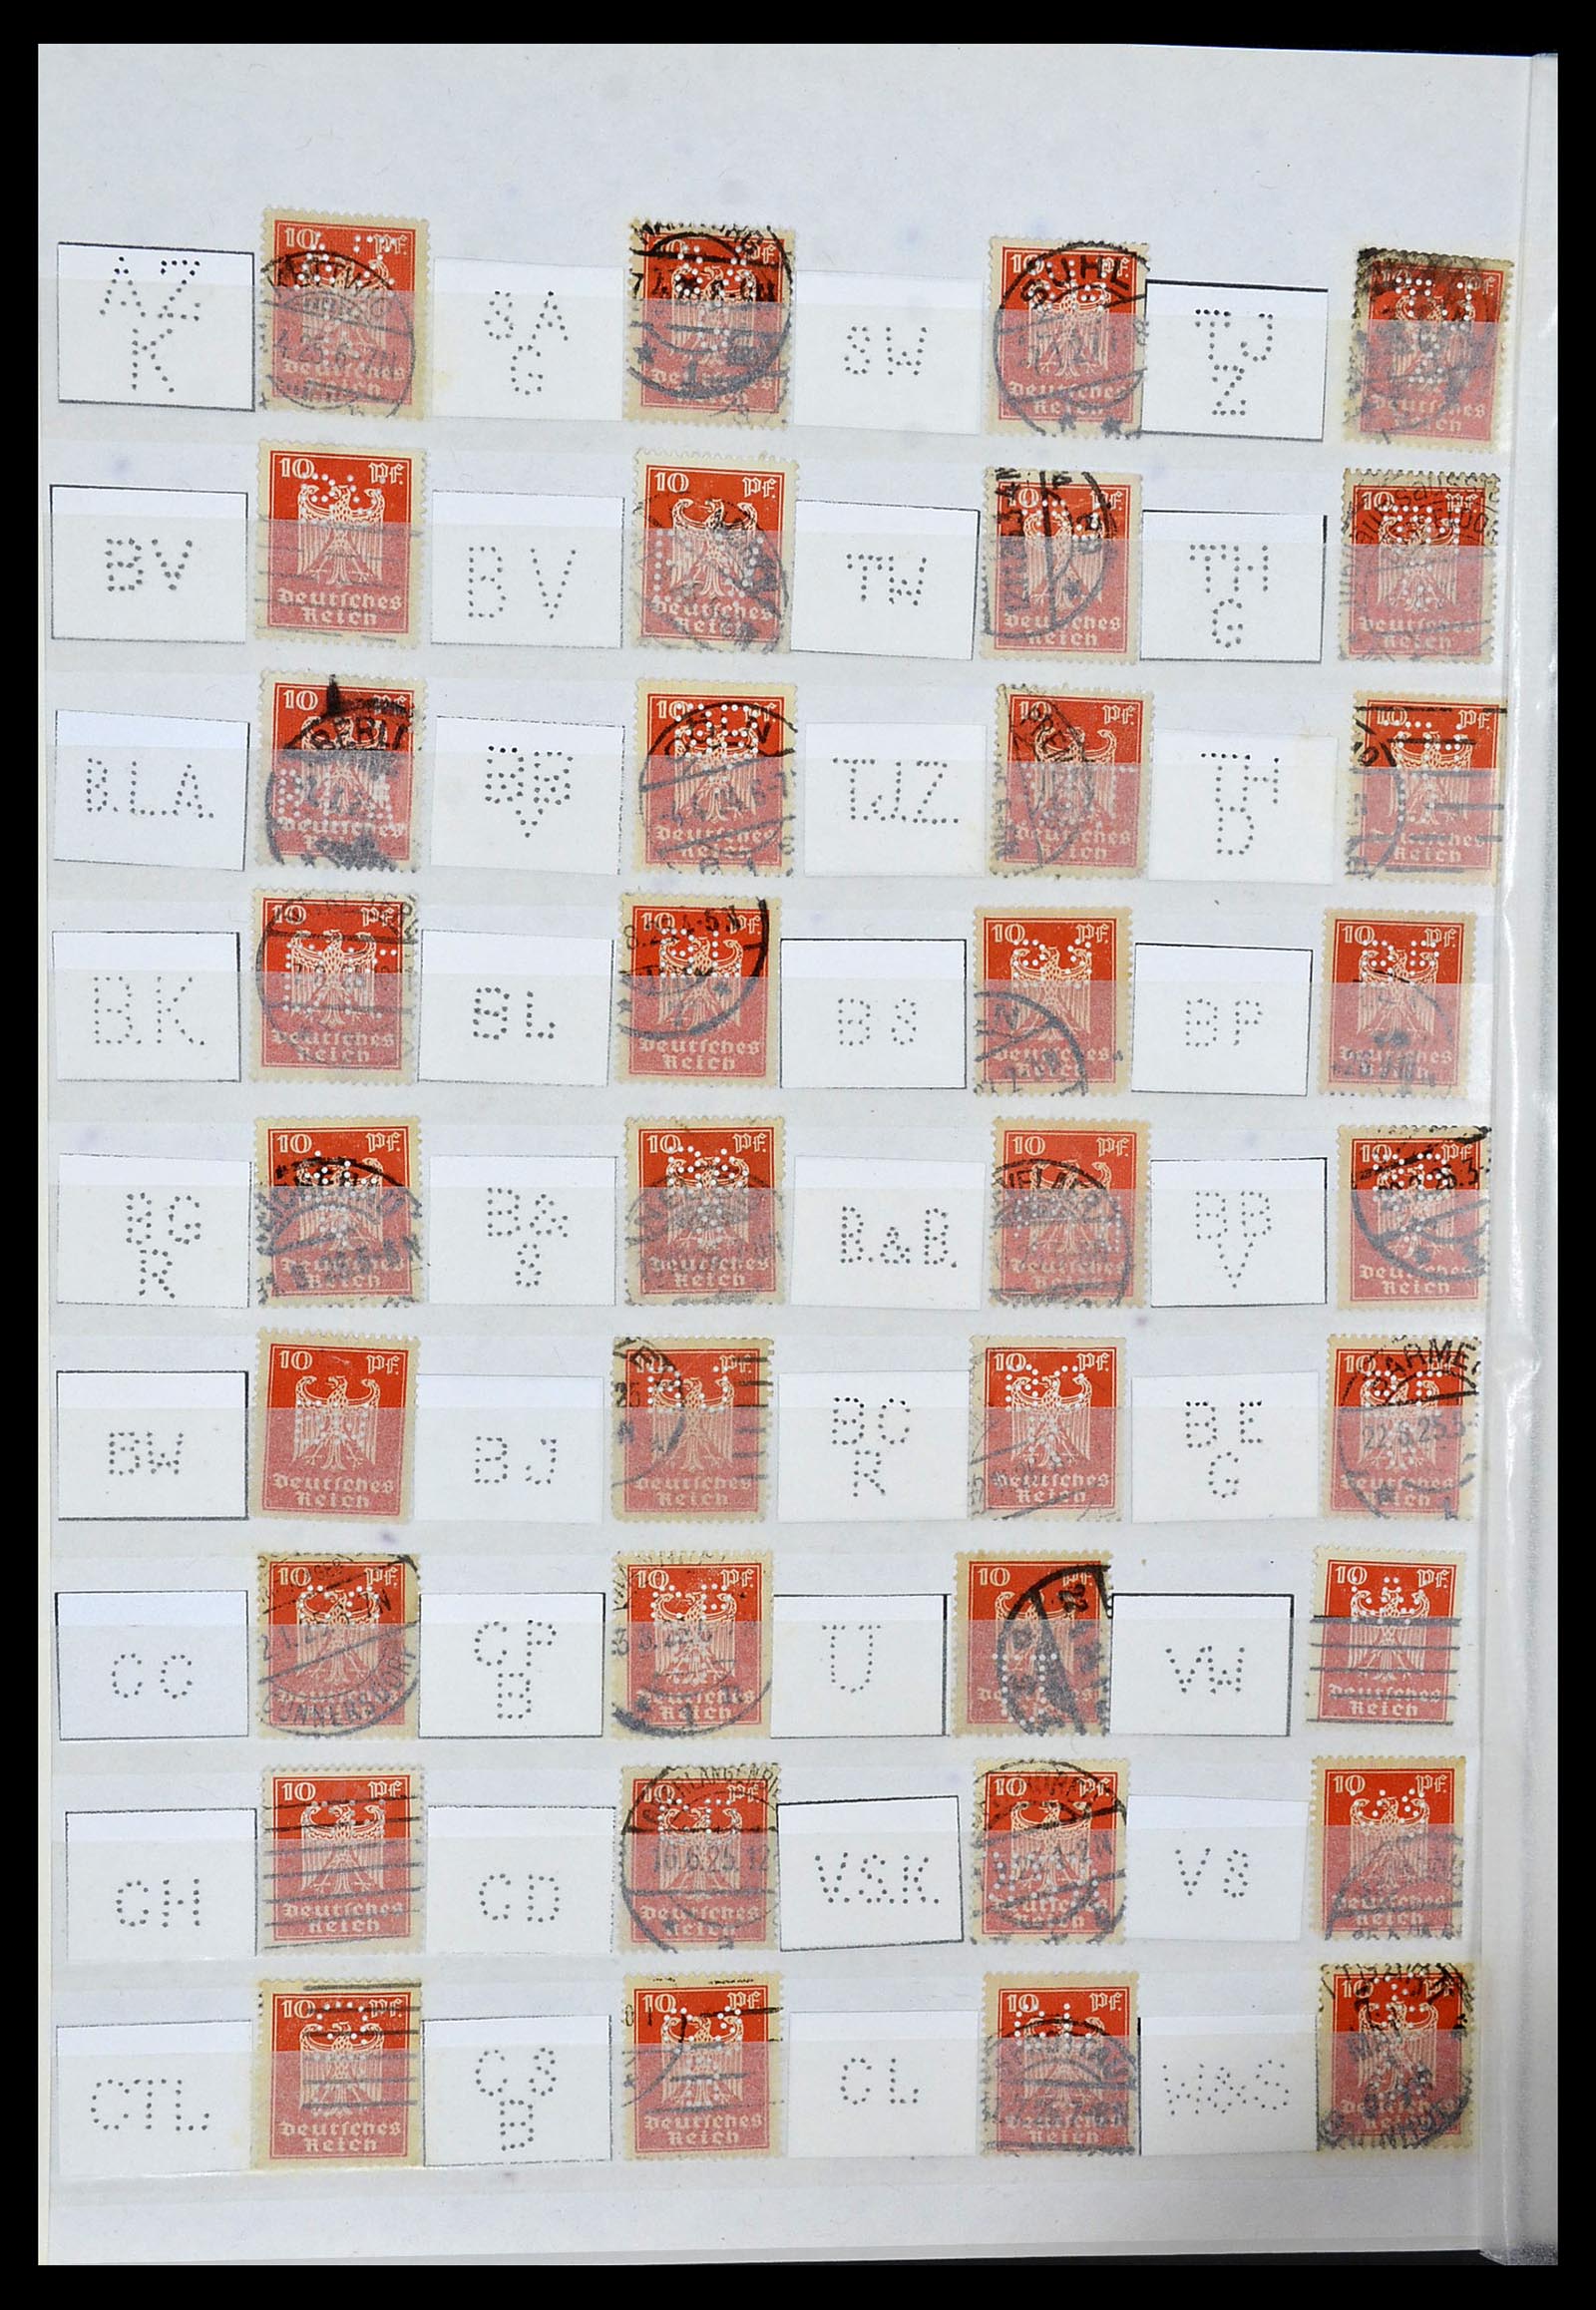 34071 024 - Stamp collection 34071 German Reich perfins 1923-1930.